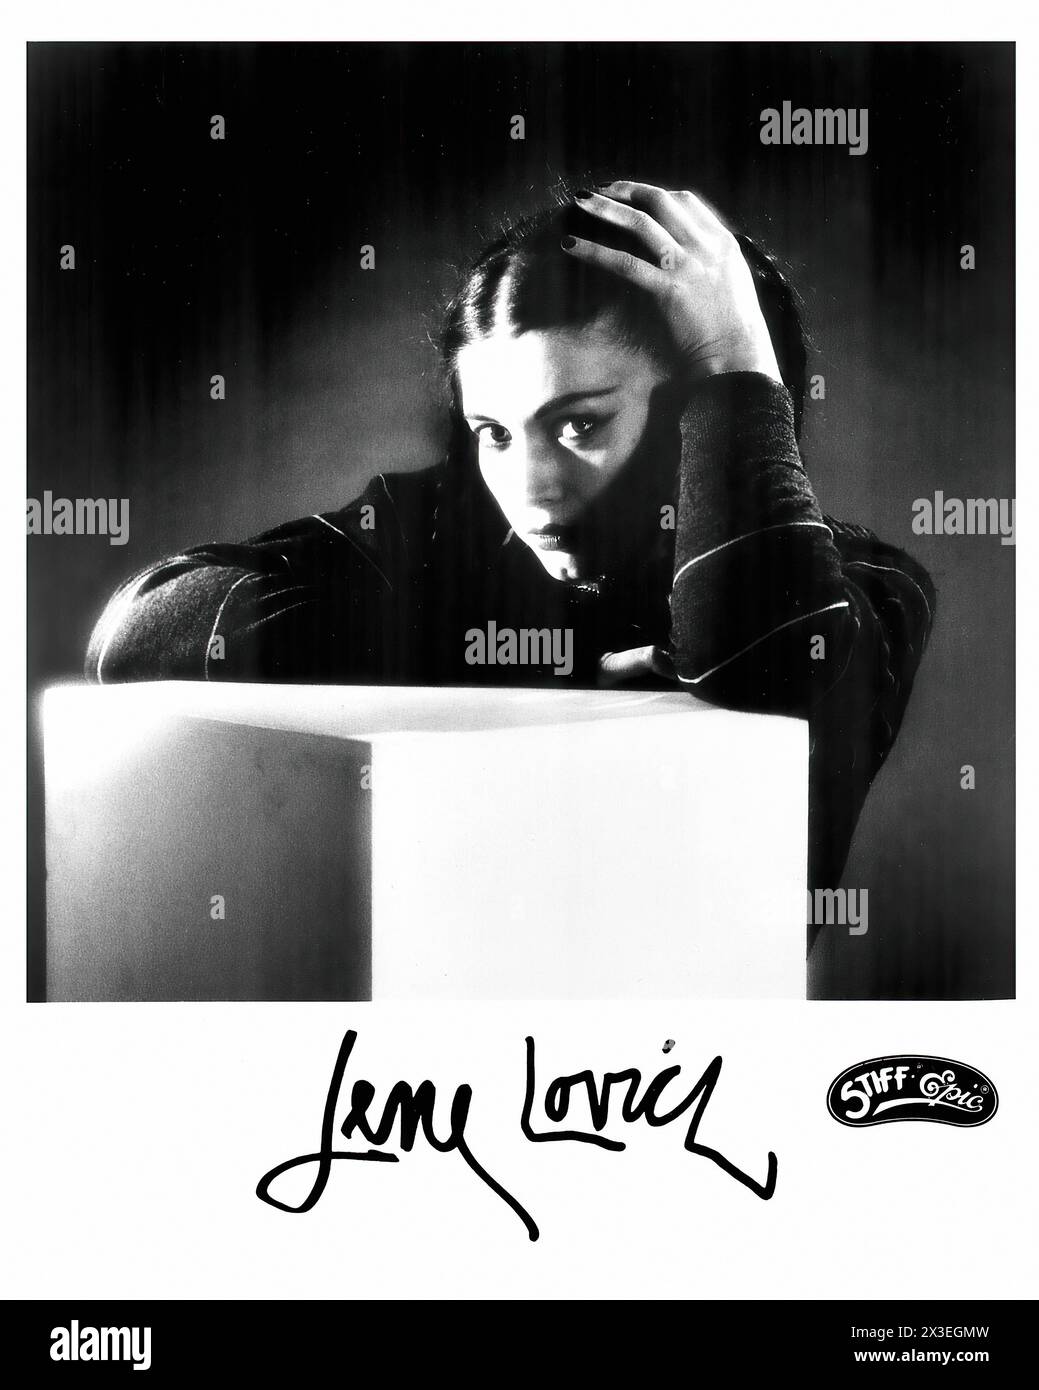 Lene Lovich 001 - immagine promozionale etichetta musicale d'epoca - fotografo sconosciuto, solo per uso editoriale Foto Stock